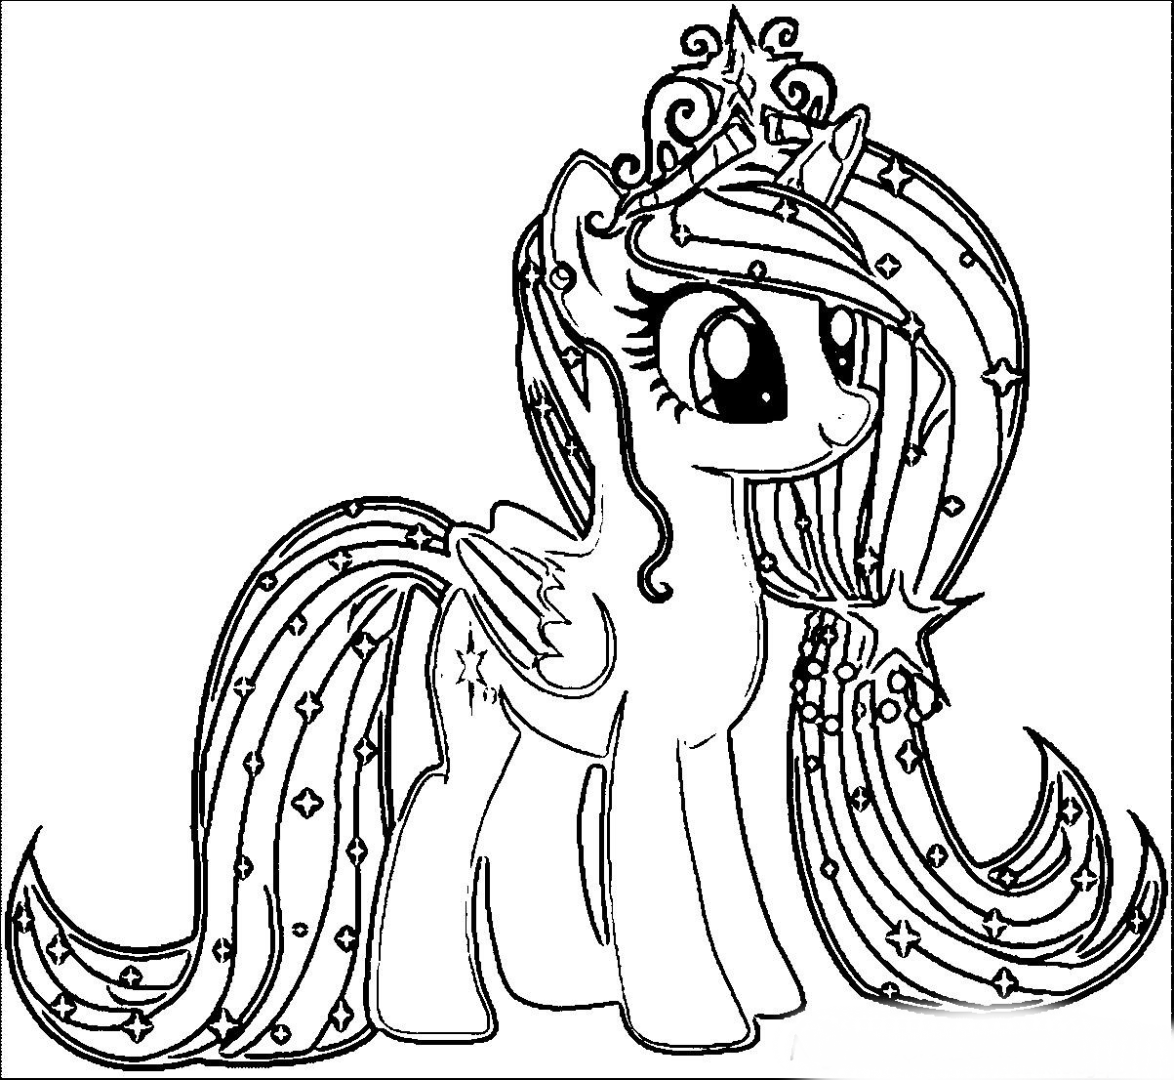 Распечатать попи раскраска. My little Pony раскраска. Раскраска понивиль принцессы. My little Pony принцессы раскраска. Раскраска пони Рарити принцесса.